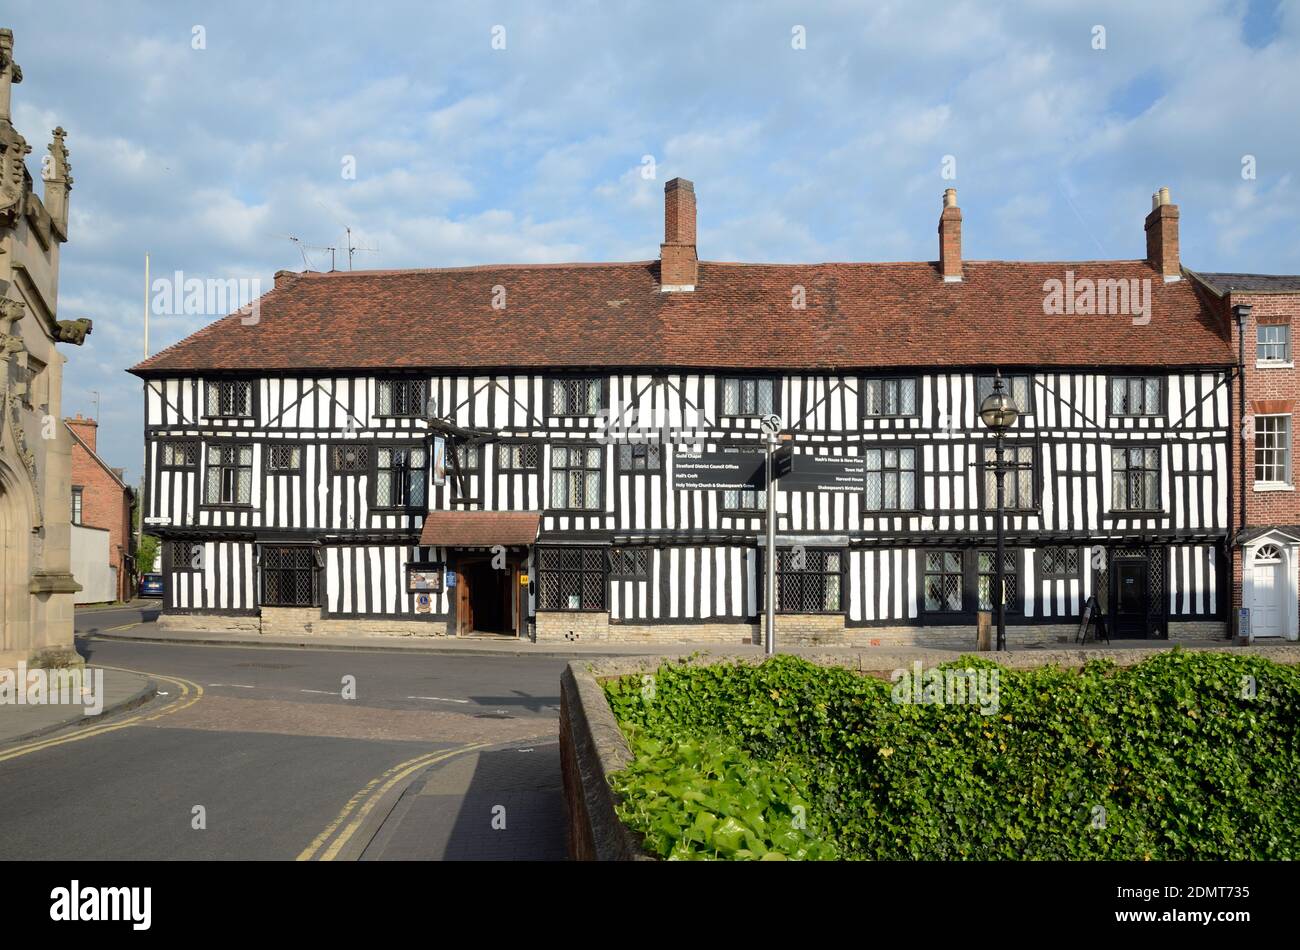 L'ancien hôtel Falcon maintenant Hôtel Indigo dans le bois historique-encadré Ou bâtiment médiéval en demi-bois Stratford-upon-Avon Warwickshire Angleterre Banque D'Images